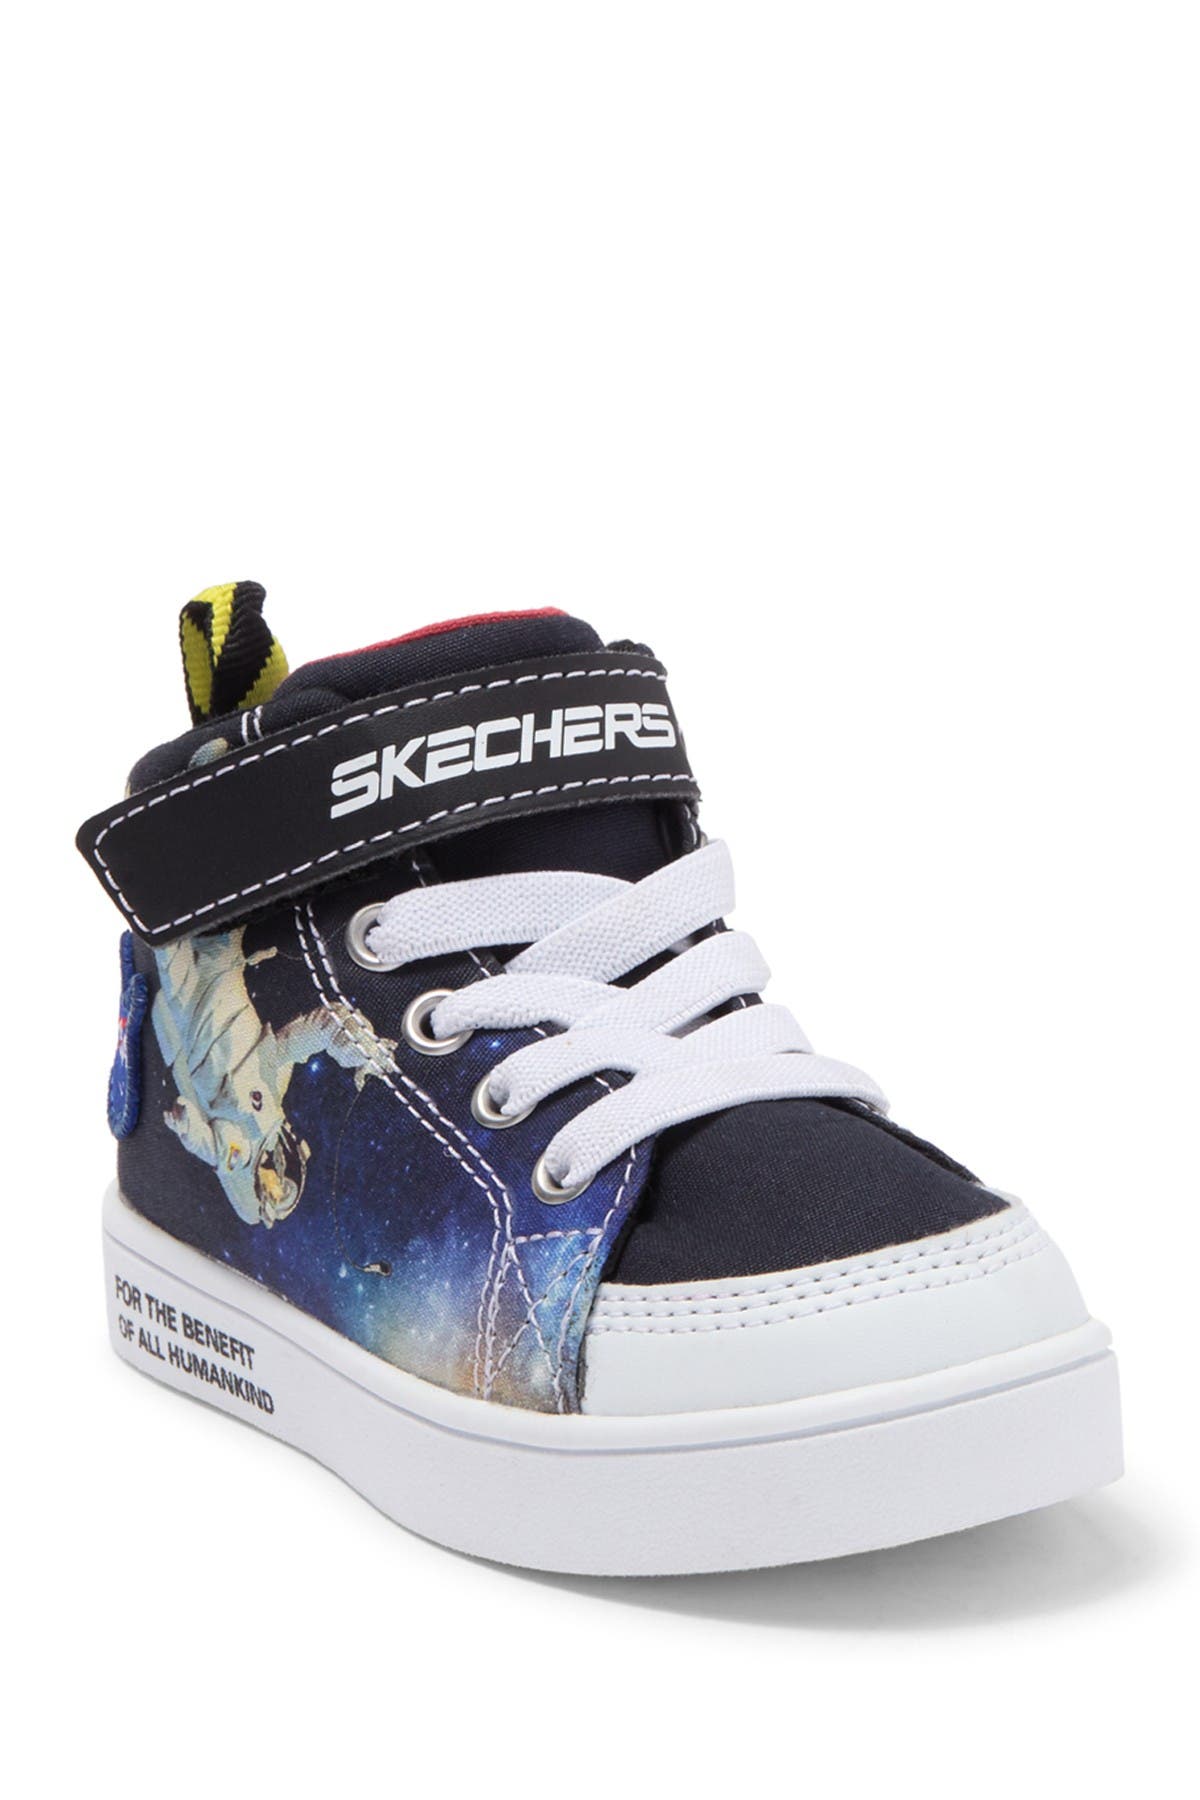 Skechers | Astro Surge Sneakers 